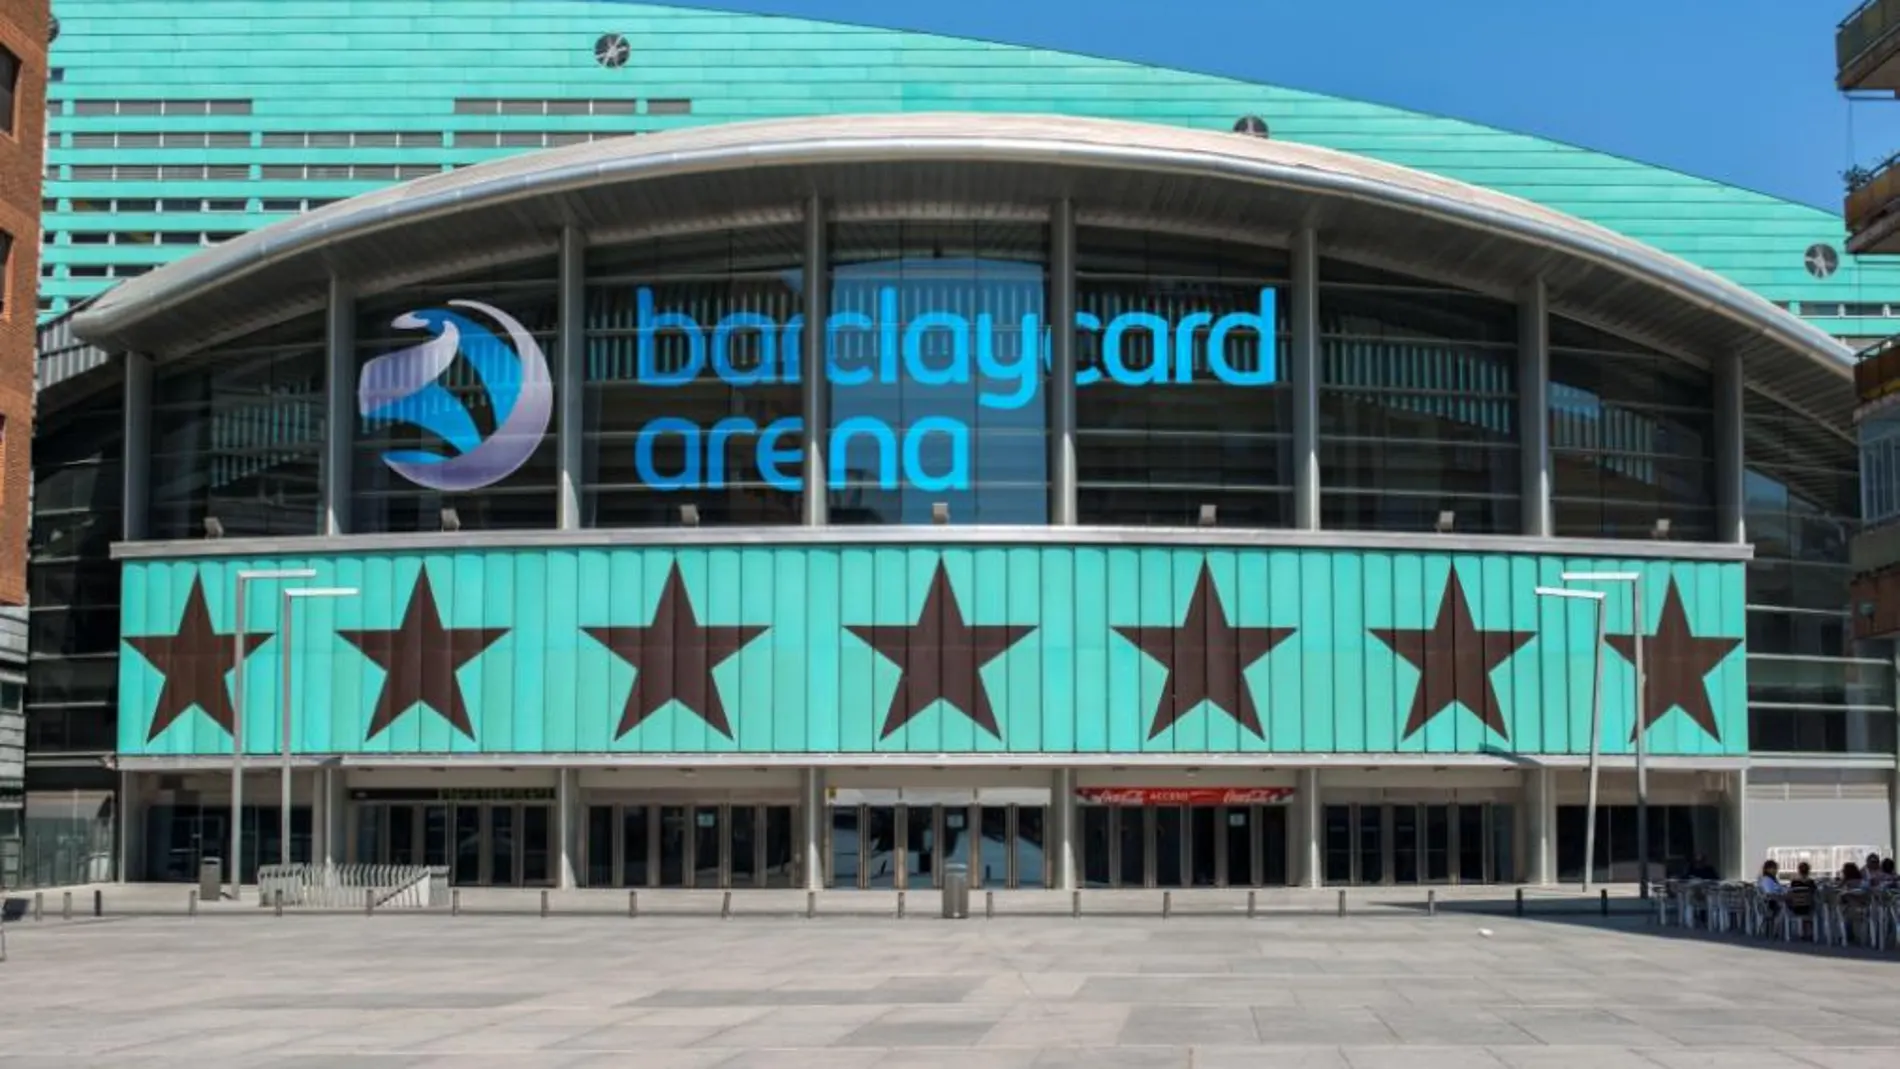 El Palacio de los Deportes de Madrid se llamará Barclaycard Arena